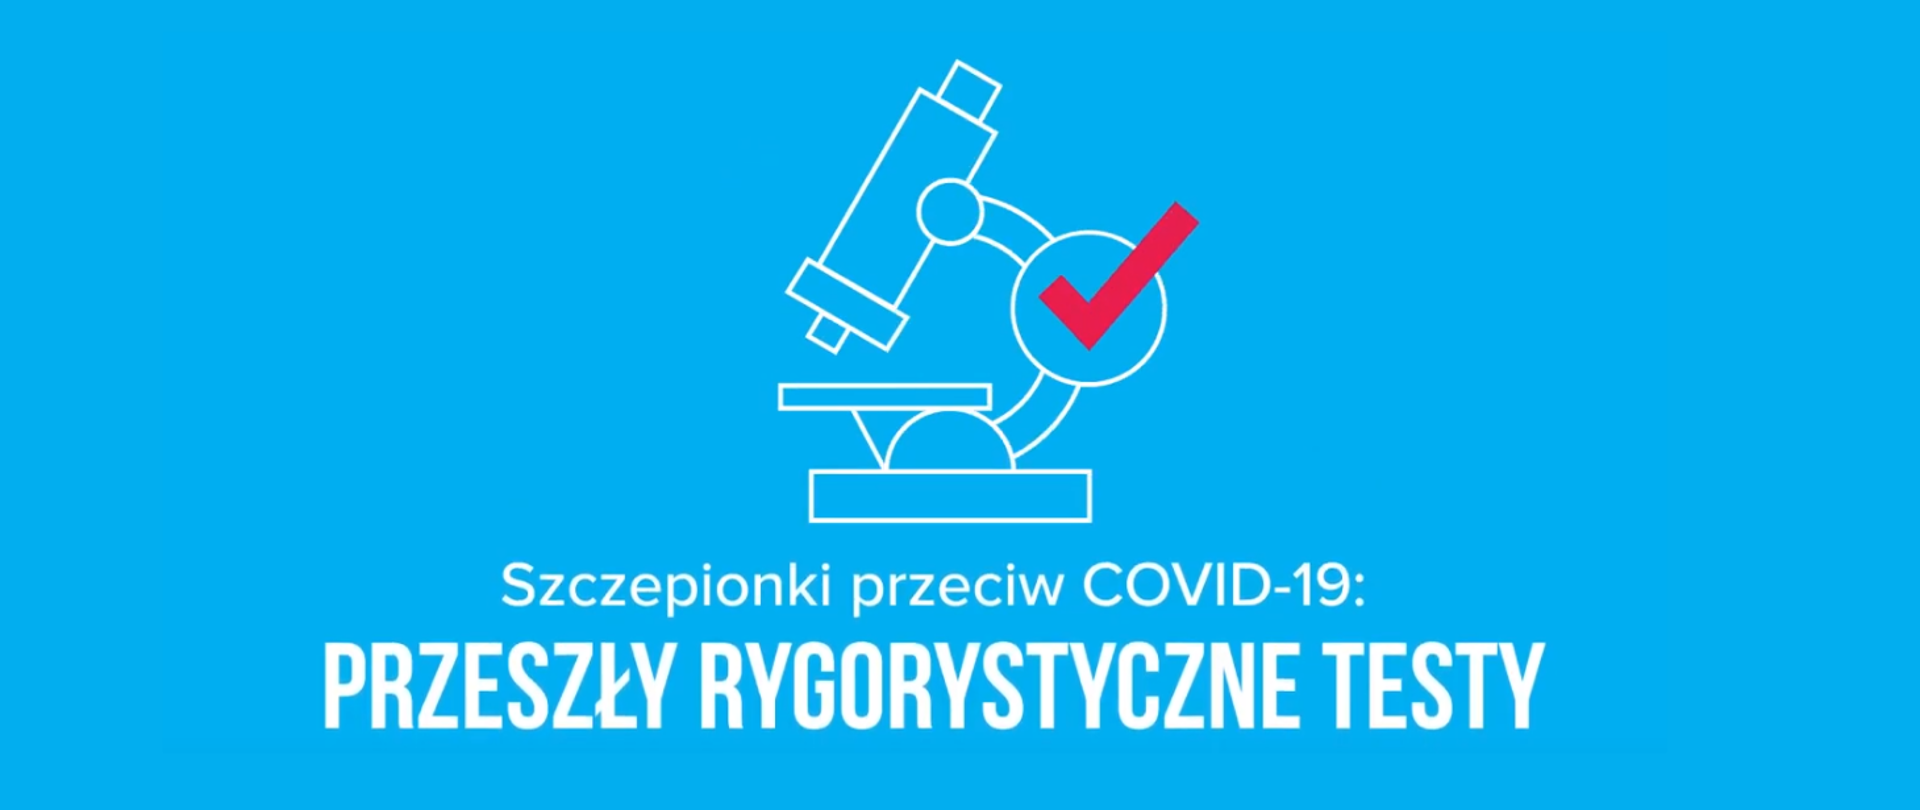 Szczepionki przeciw COVID-19 przeszły rygorystyczne testy